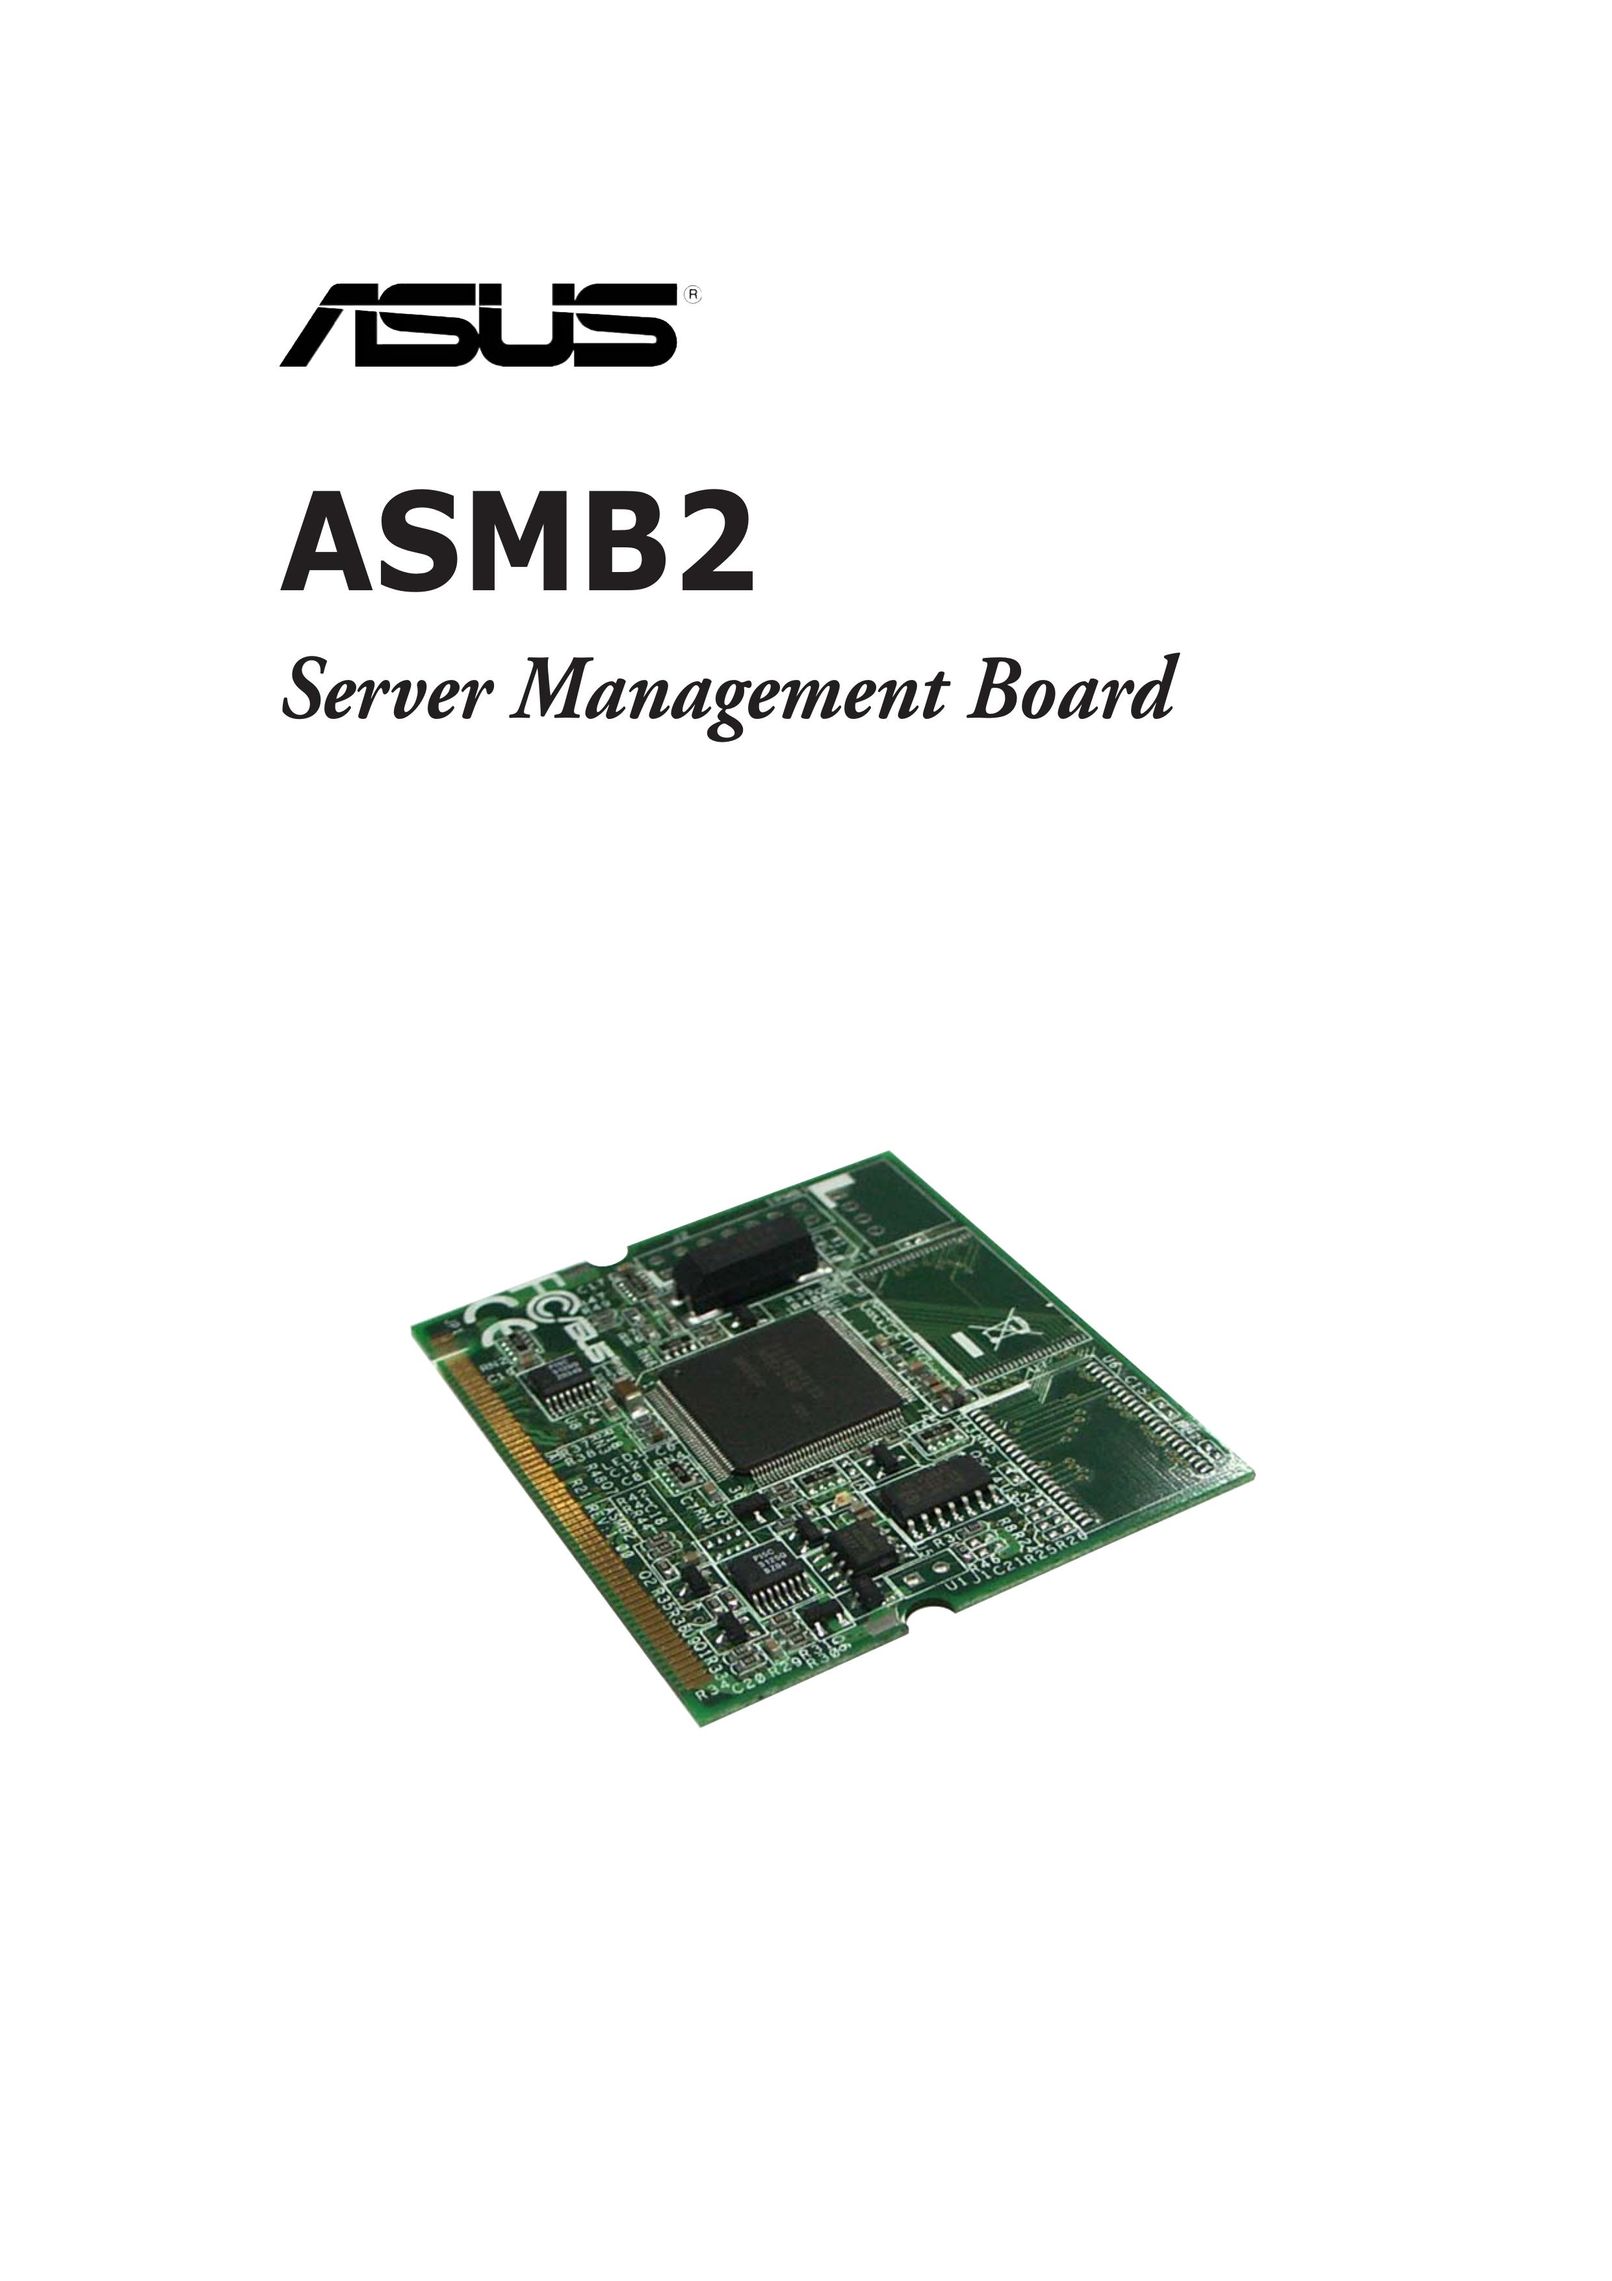 Asus ASMB2 Network Card User Manual